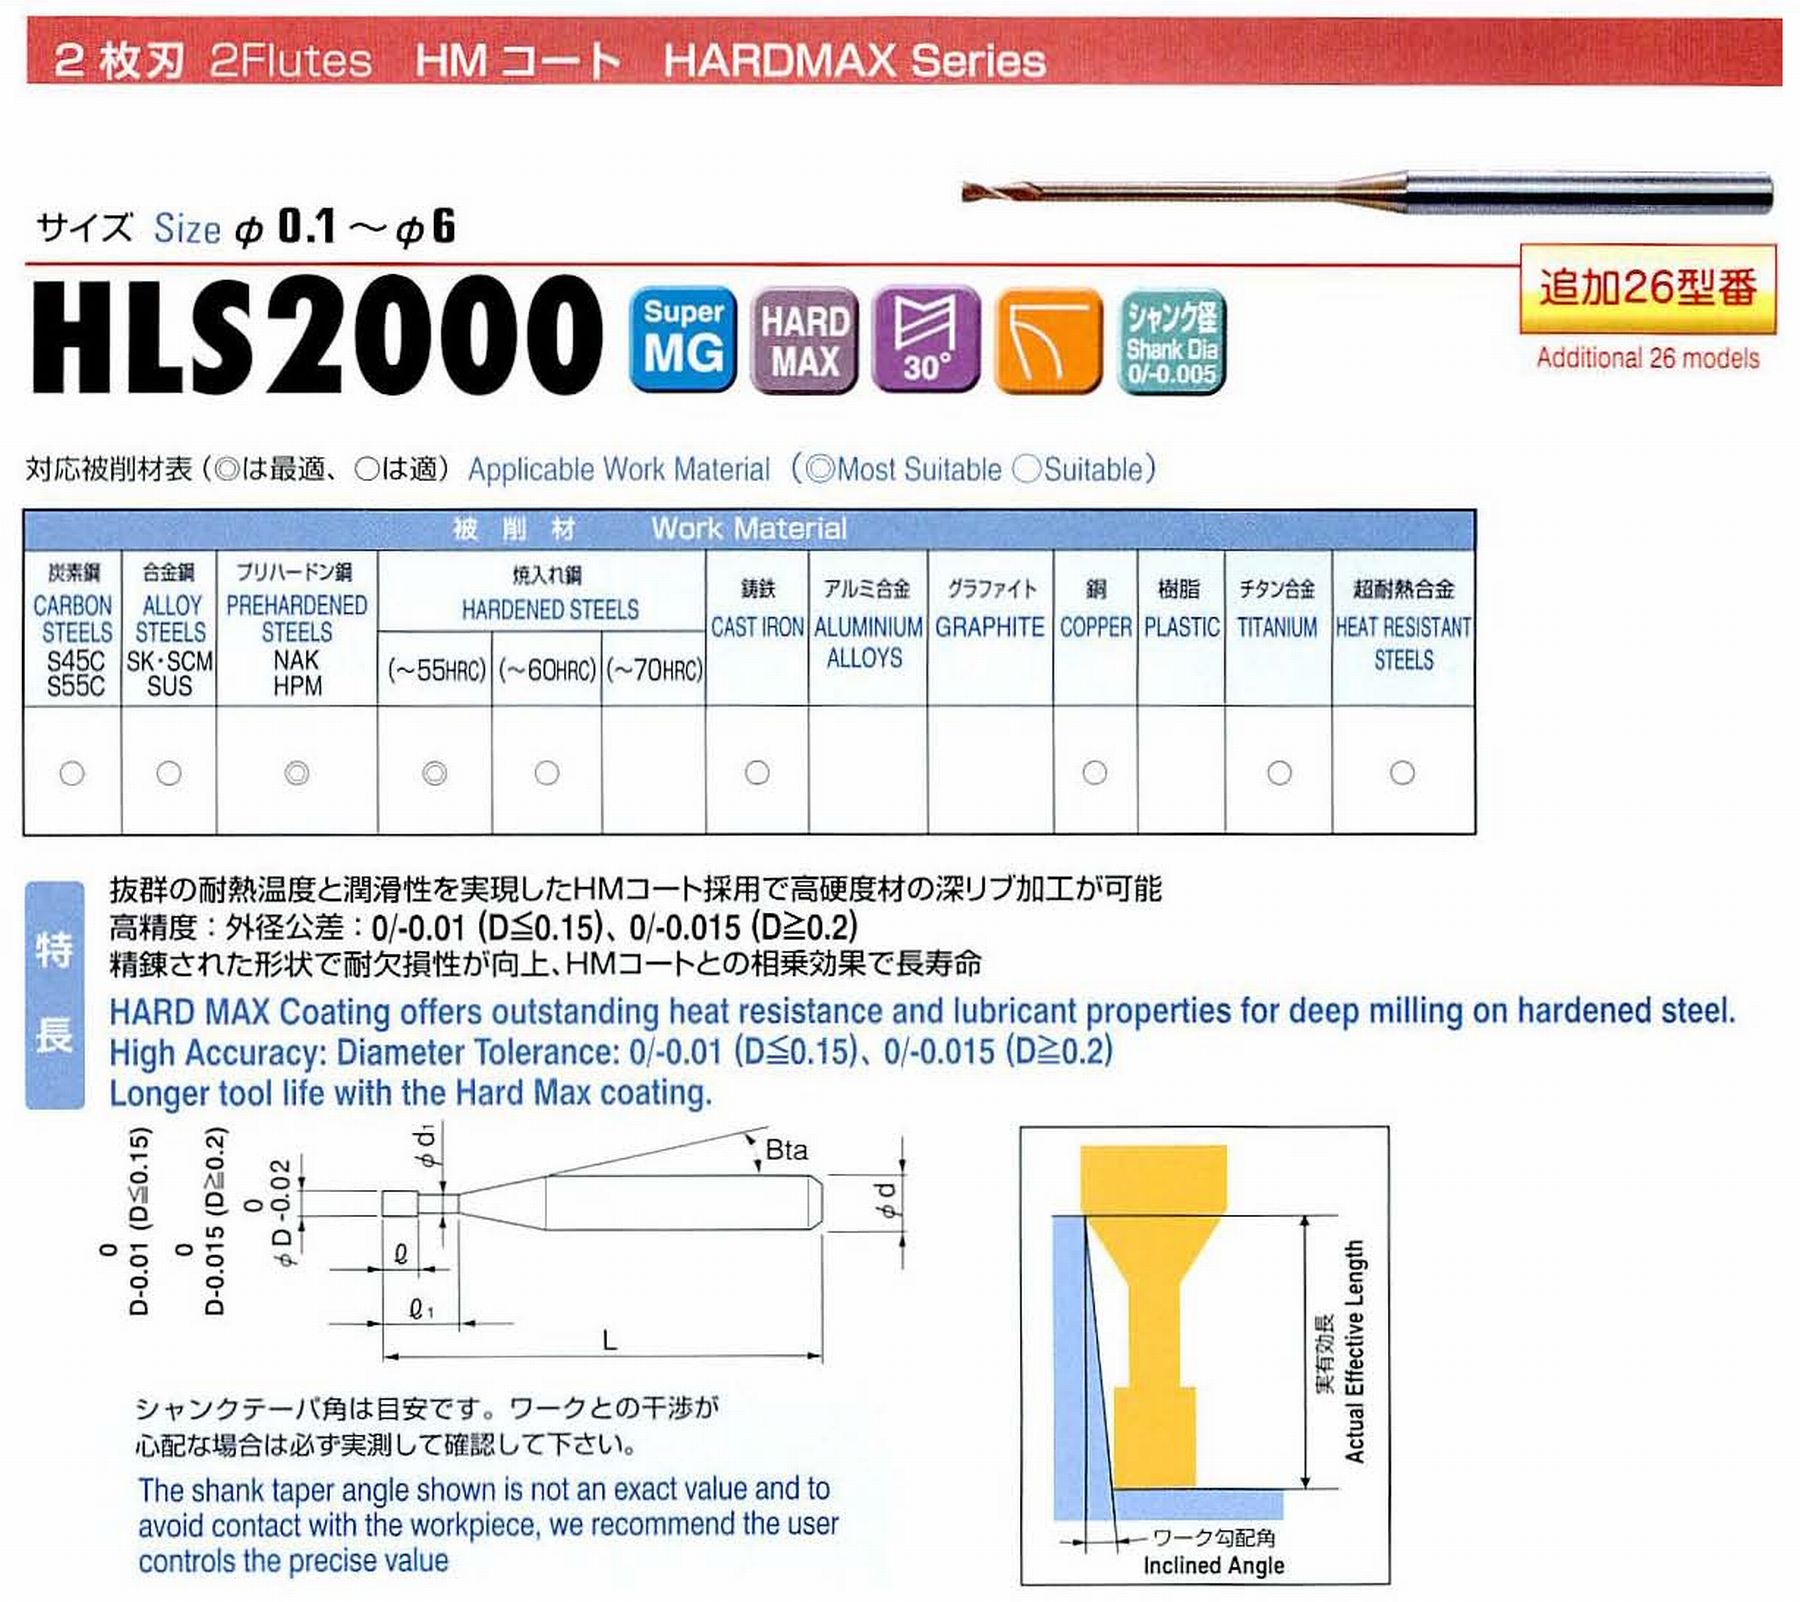 ユニオンツール 2枚刃 HLS2004-040 外径0.4 有効長4 刃長0.6 首径0.38 シャンクテーパ角16° 全長45 シャンク径4